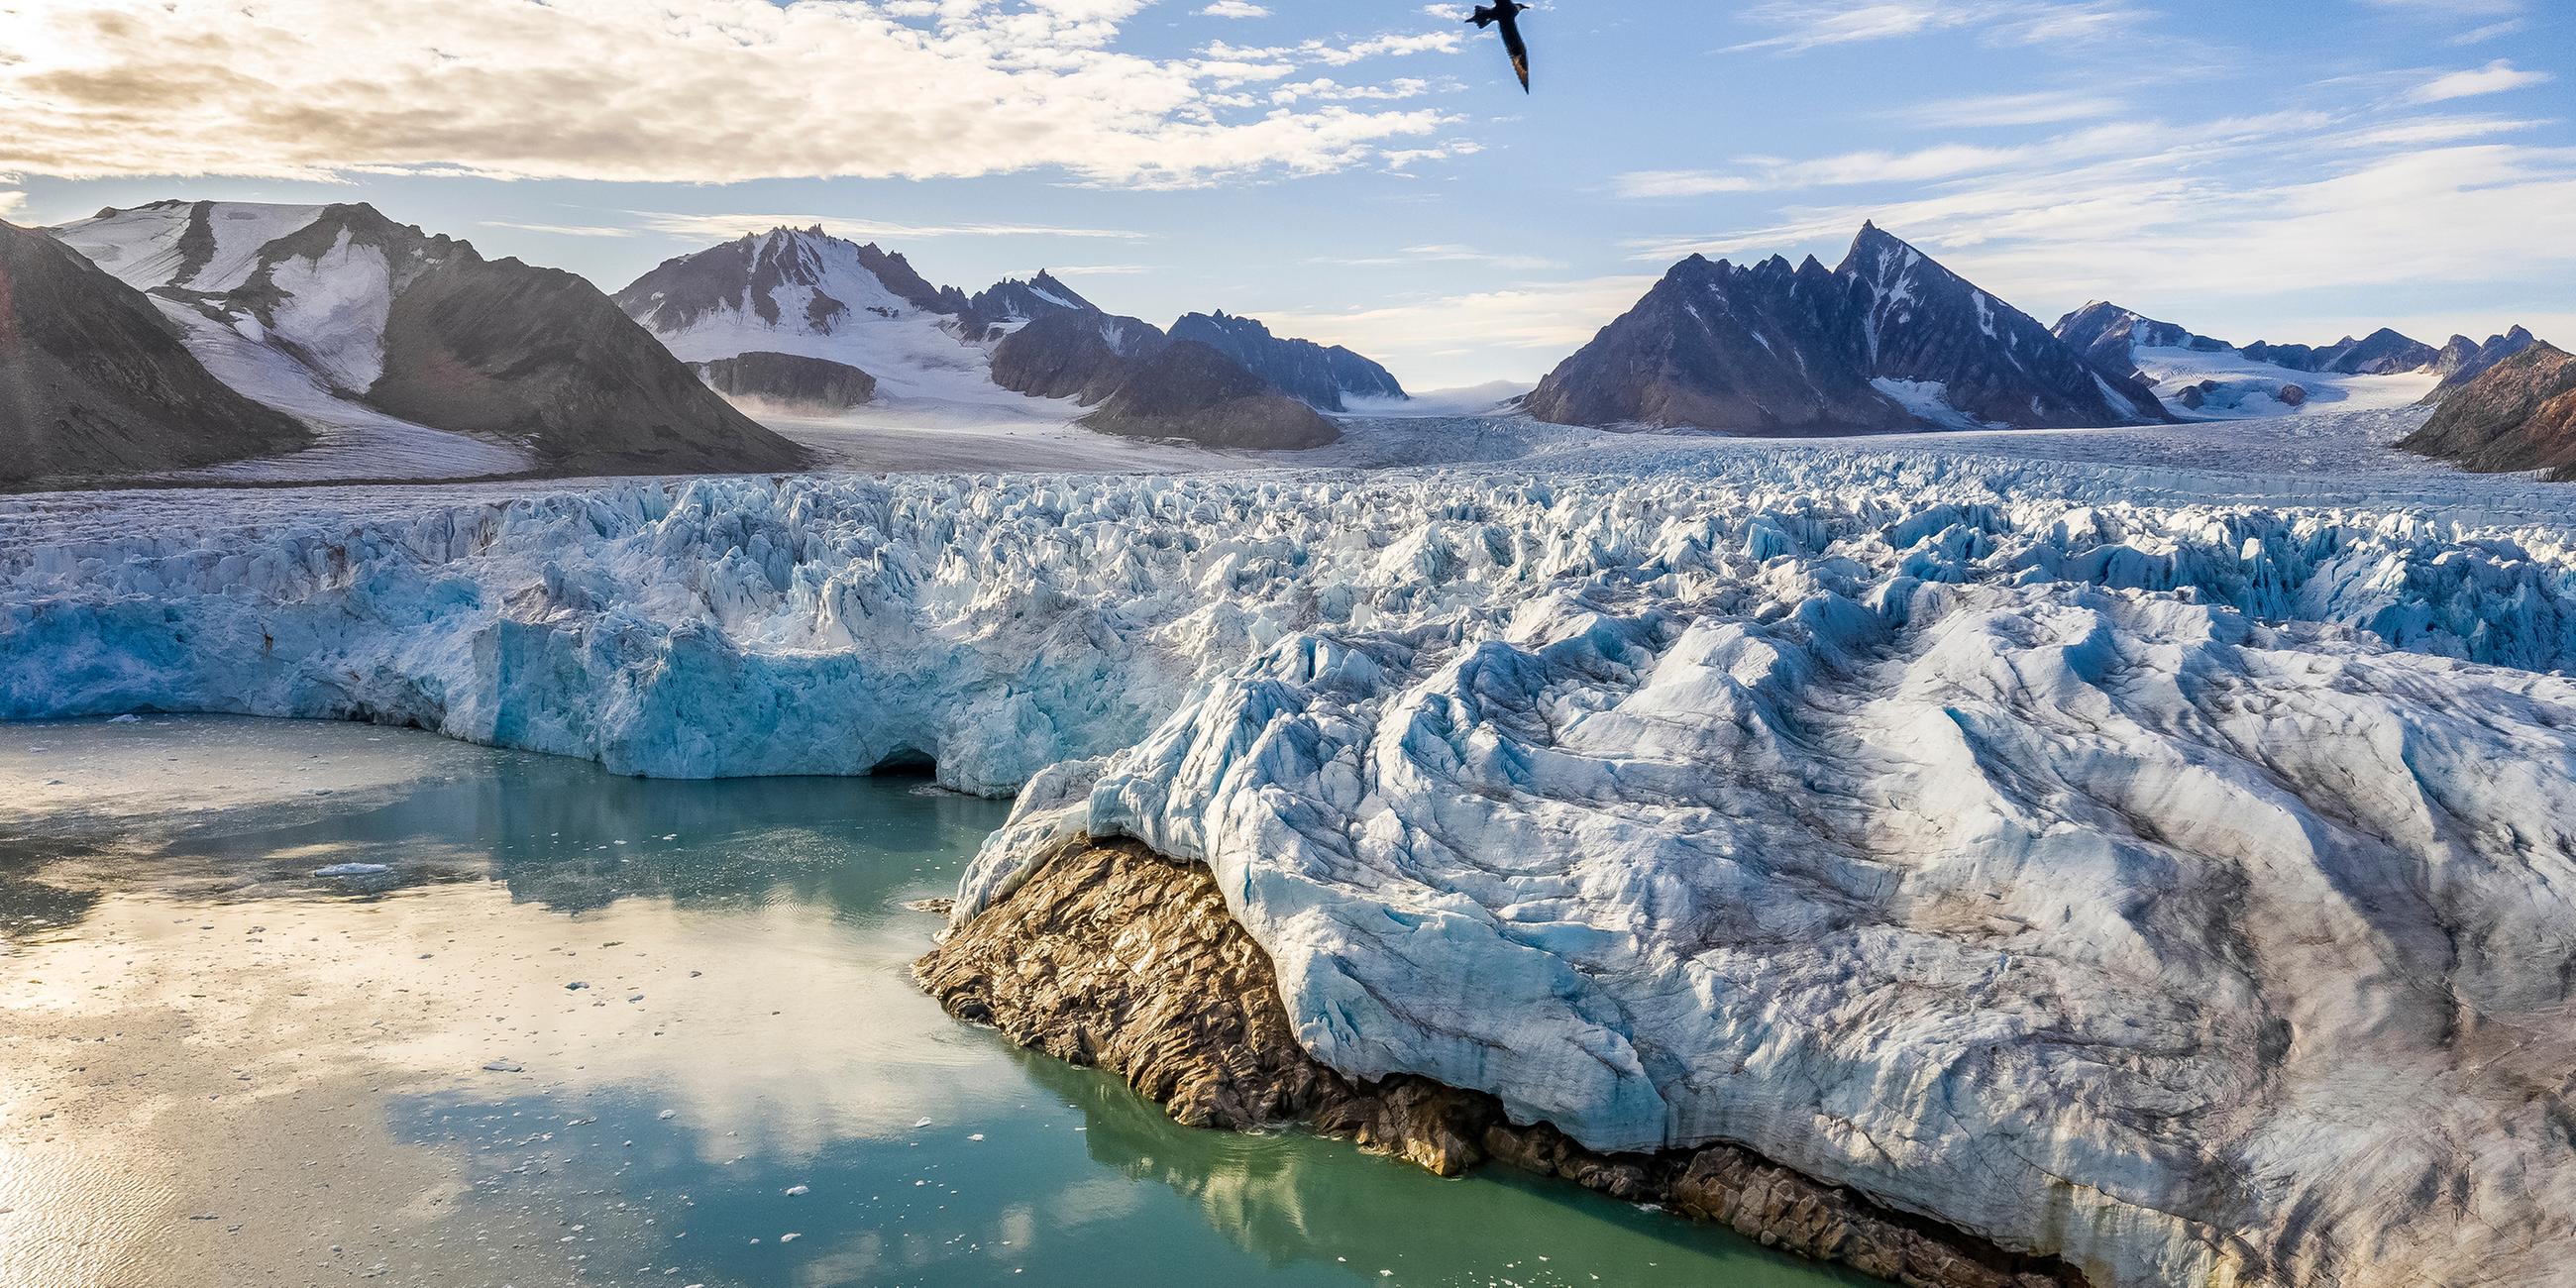 Ein Gletscher trifft auf das Meer. Im Hintergrund erheben sich Berggipfel und ein Vogel fliegt über die Szenerie.